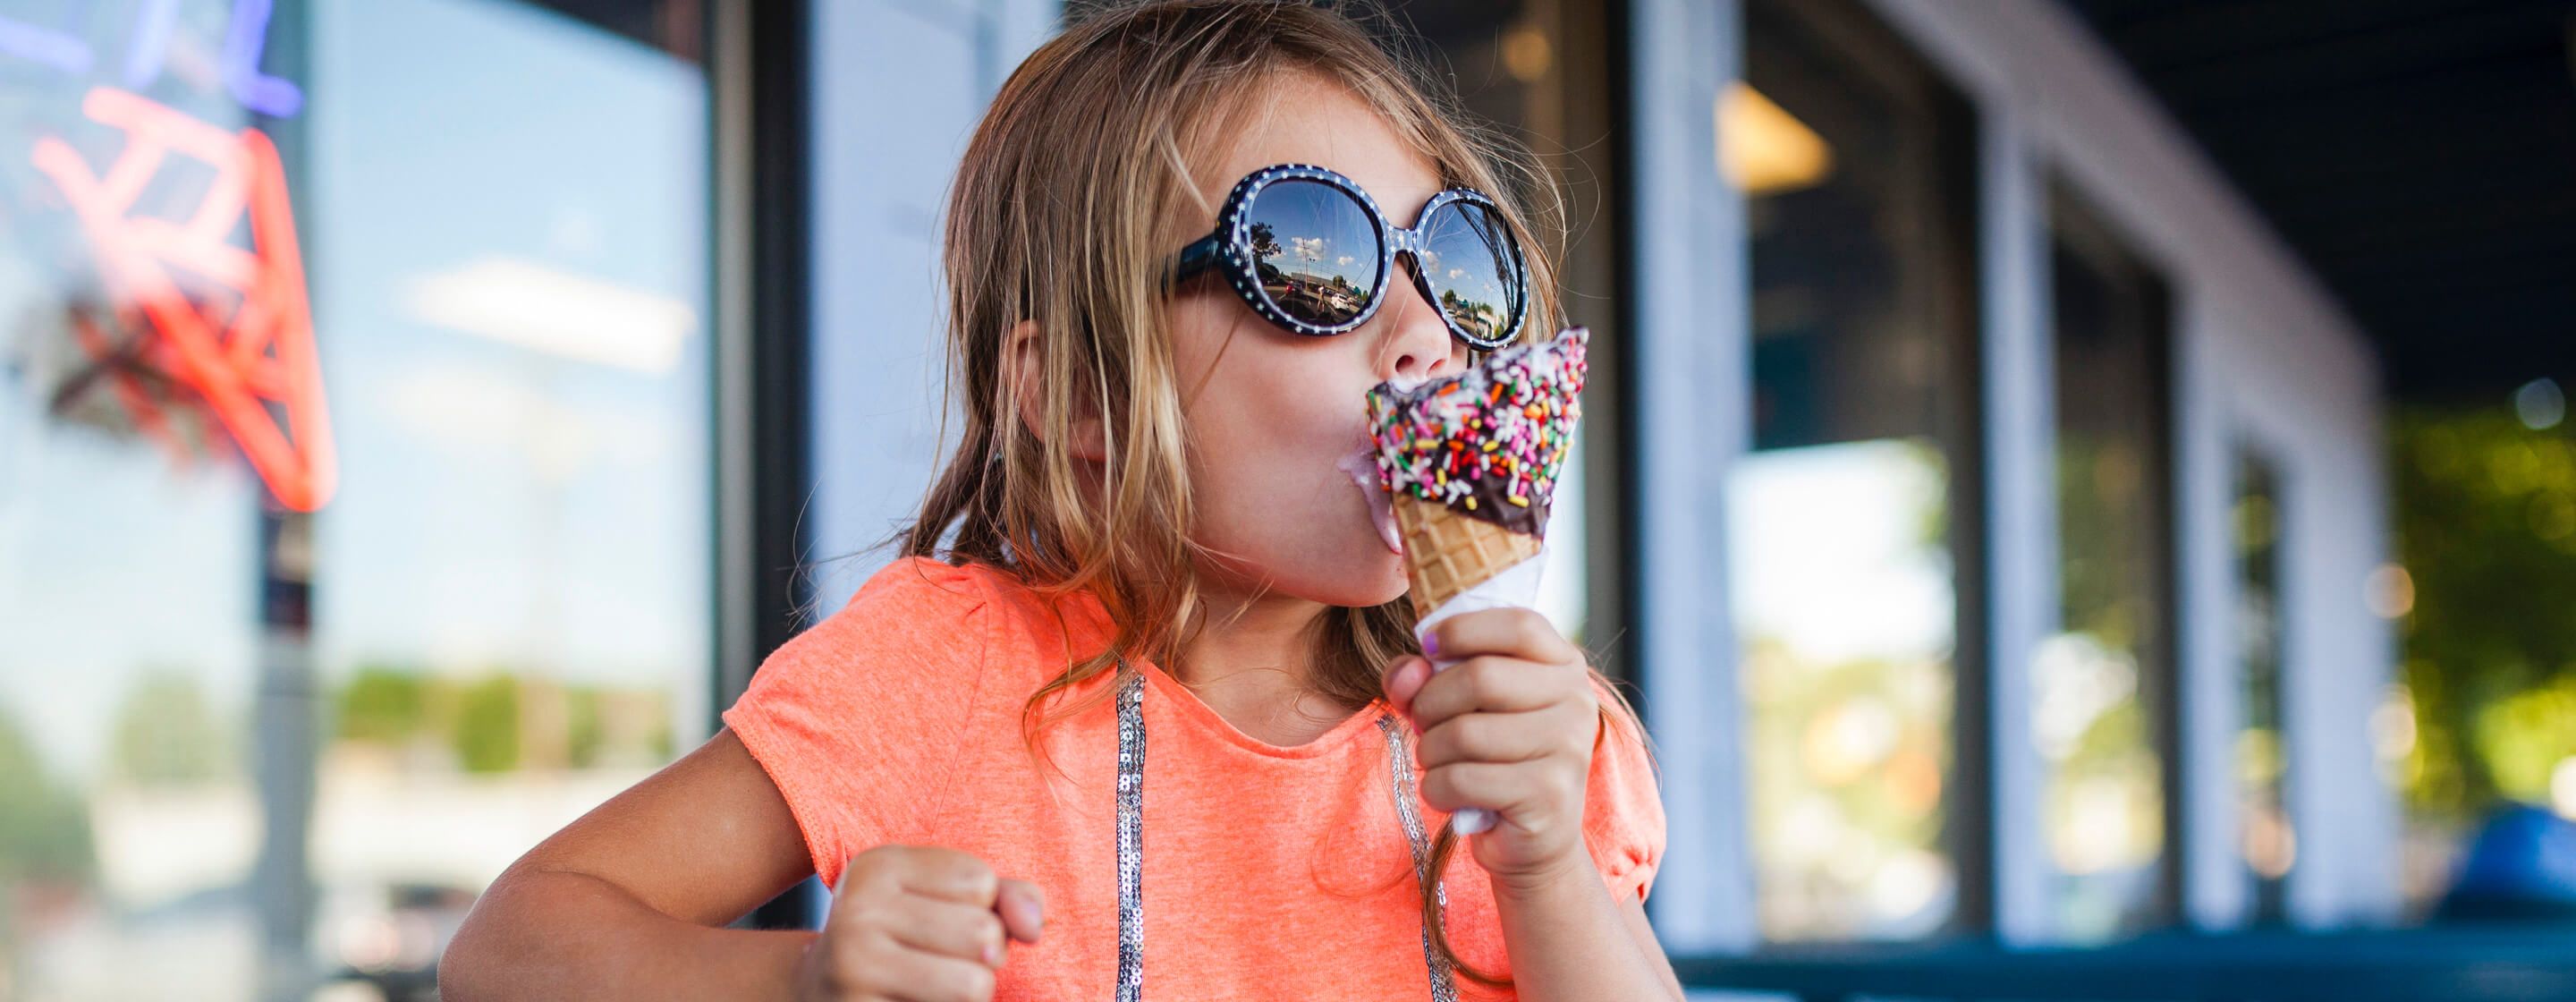 戴墨鏡的年輕女孩在一家冰淇淋店前吃著巧克力和灑滿巧克力米的冰淇淋甜筒